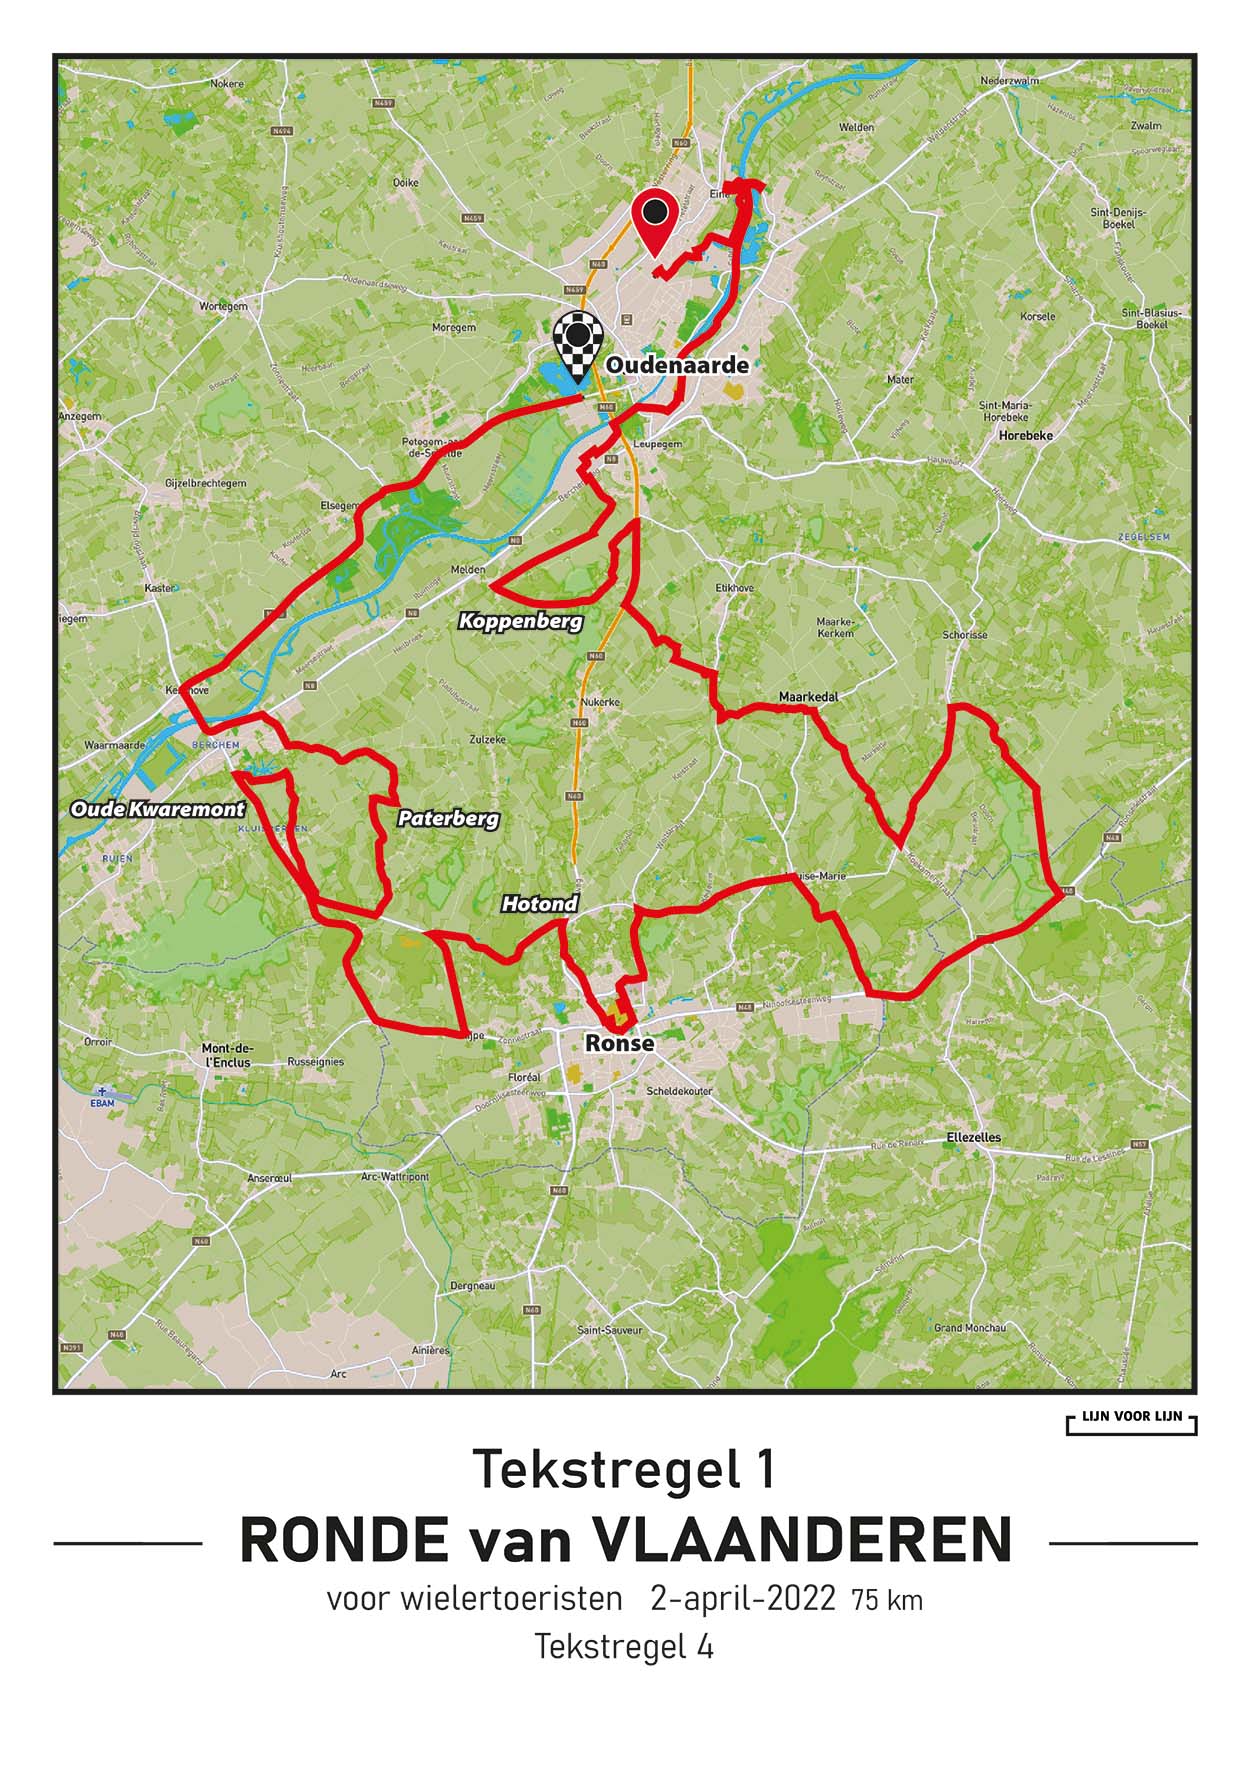 Ronde van Vlaanderen Cyclo 75km, 2022 Lijn voor Lijn